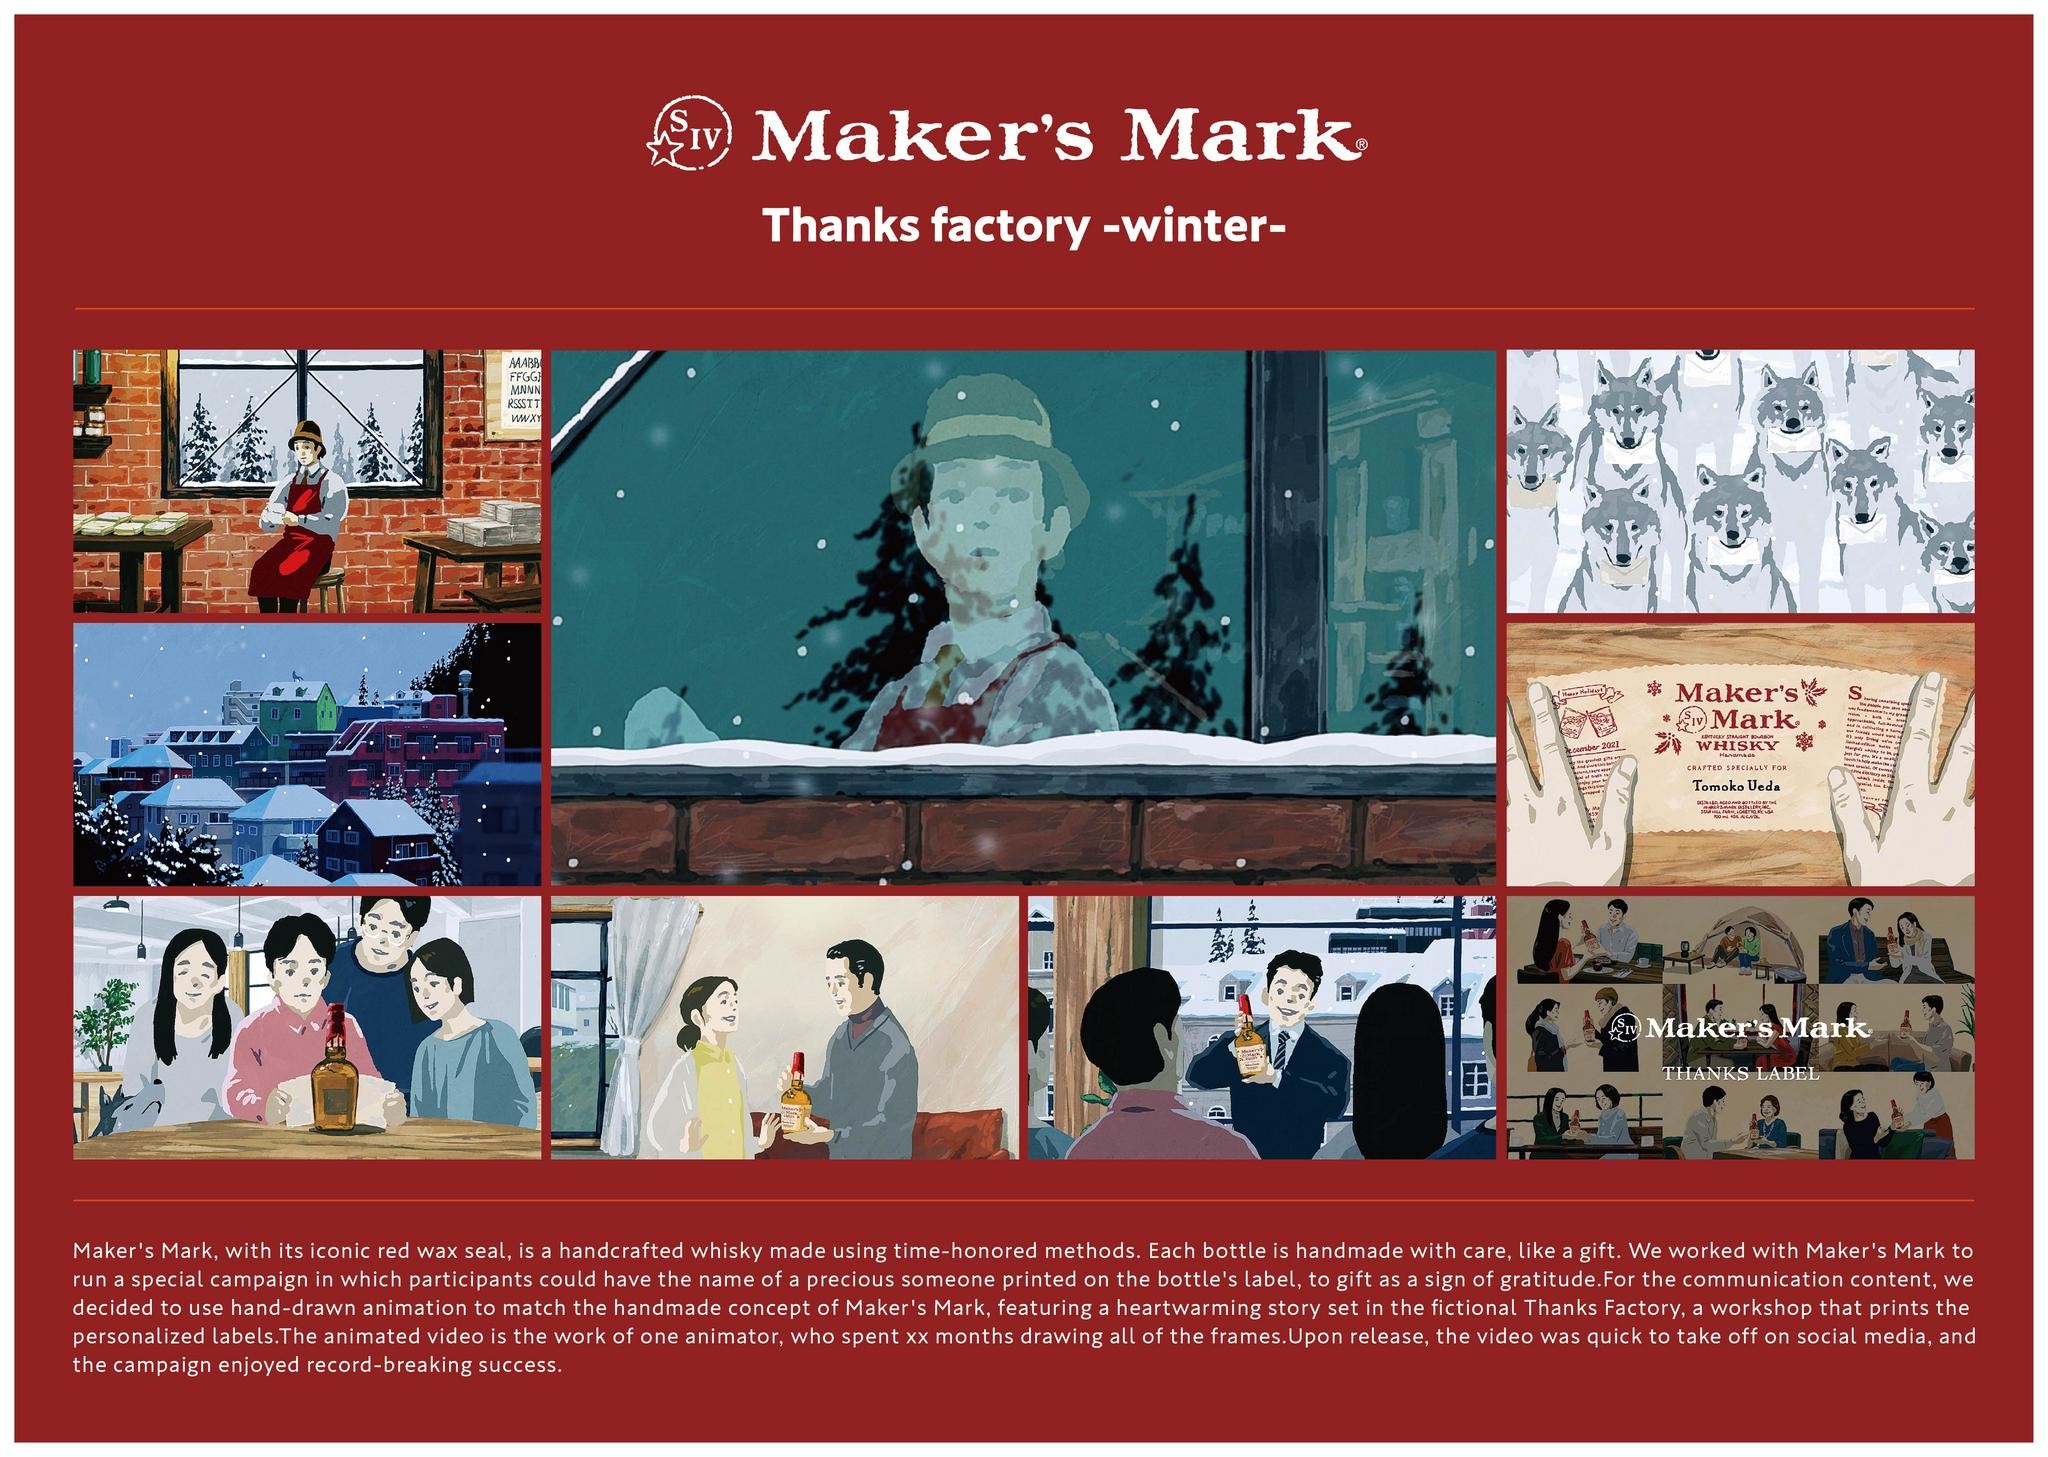 MAKER’S MARK THANKS FACTORY -WINTER-